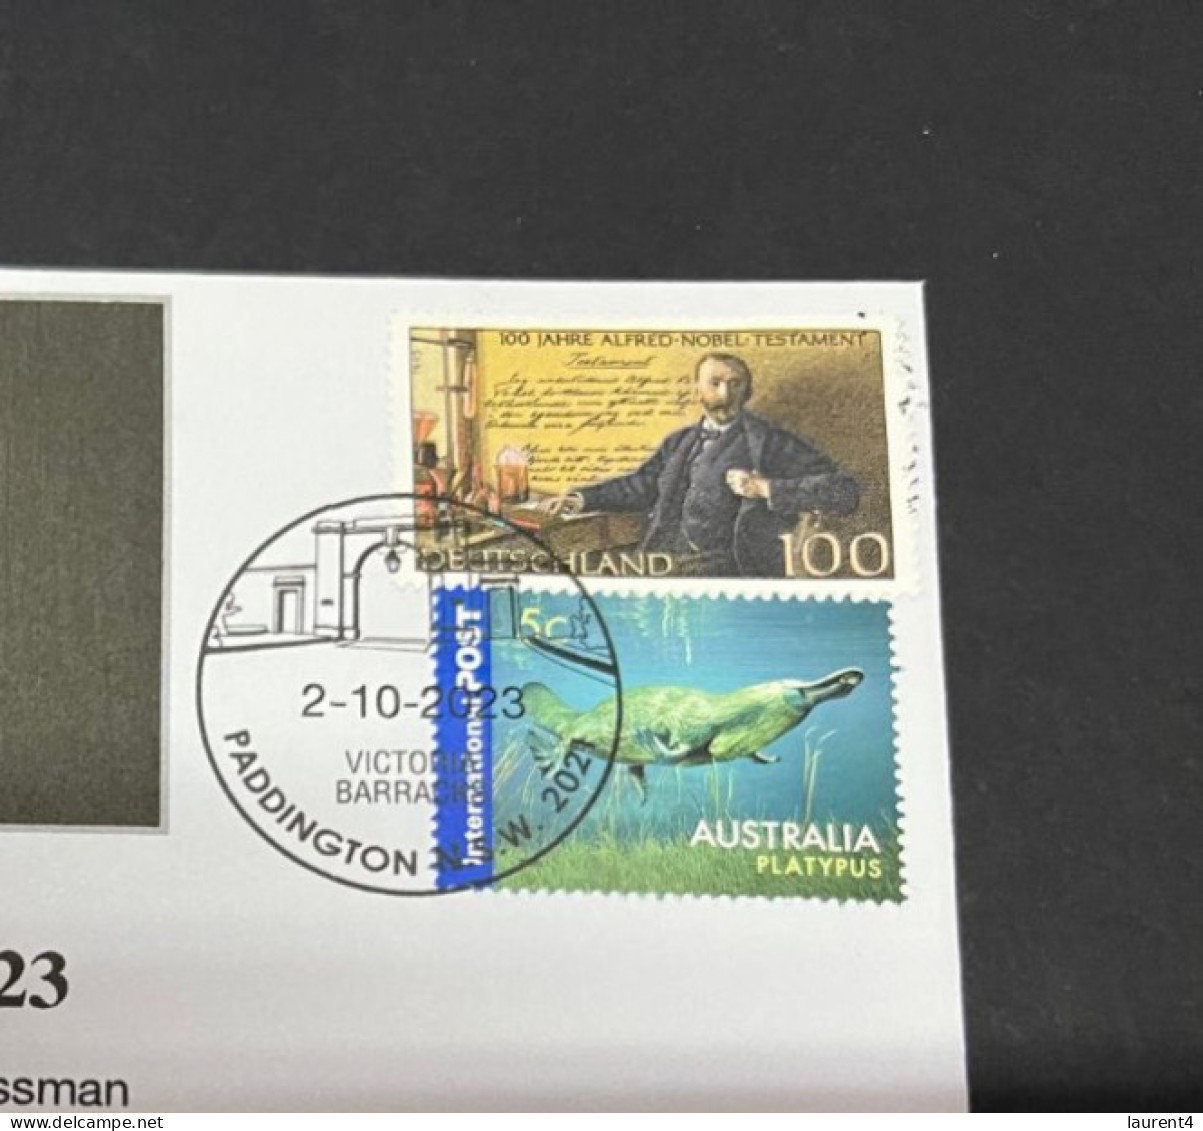 4-10-2023 (3 U 17) Nobel Medecine Prize Awarded In 2023 - 1 Cover - Germany NOBEL Stamp (postmarked 2-10-2022) - Other & Unclassified